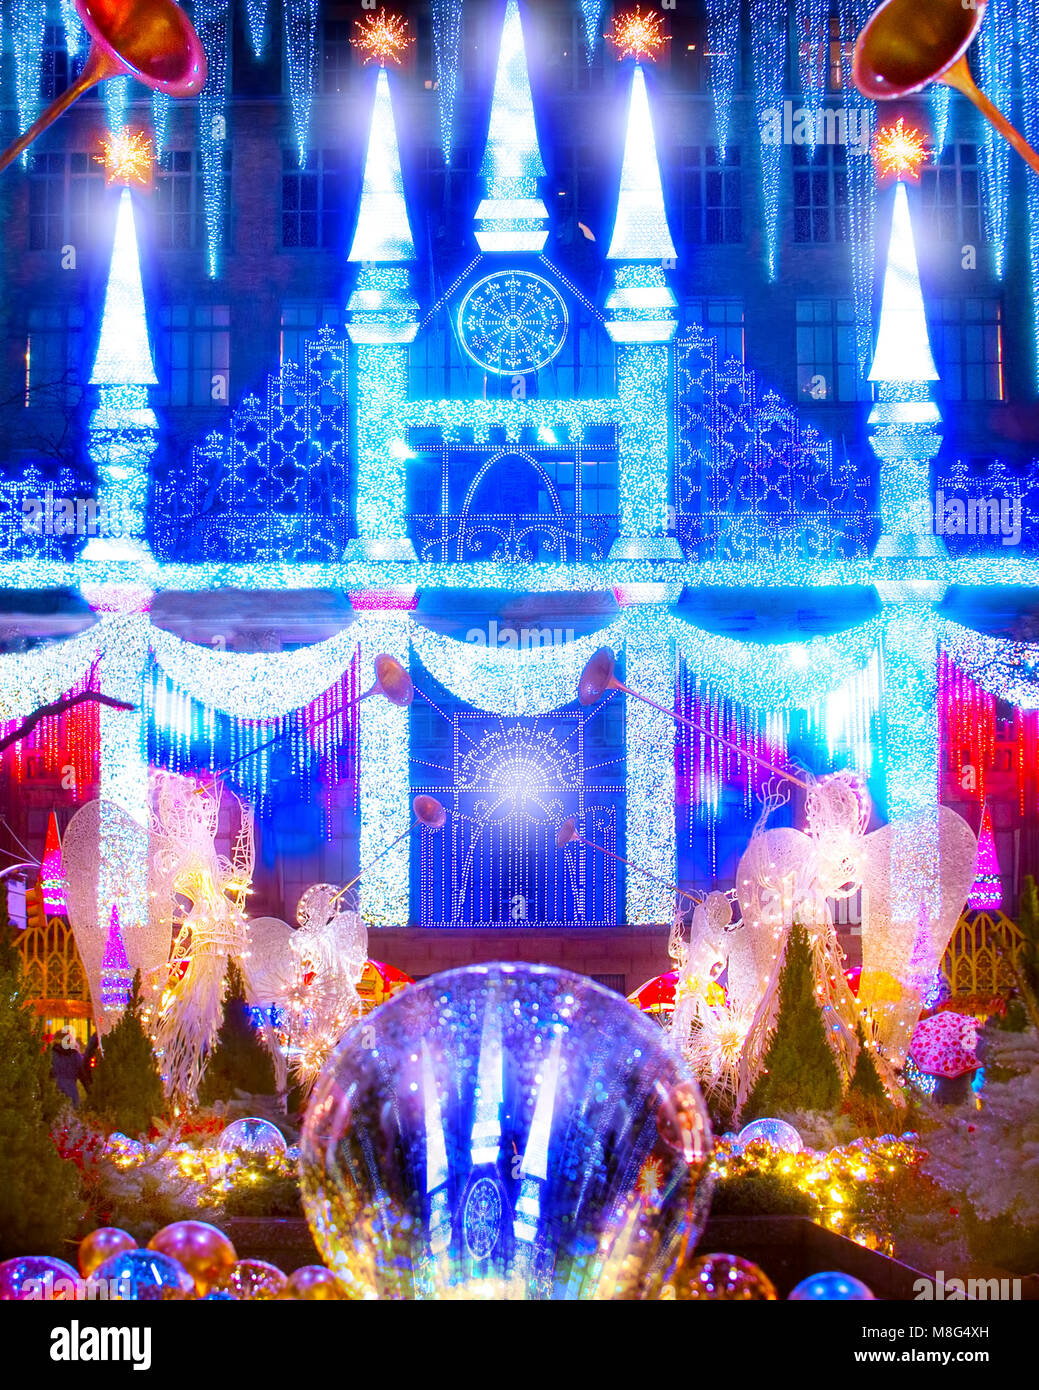 Le merveilleux et étonnant spectacle de lumière laser Noël projetée sur l'avant de Saks Fifth Avenue au Rockefeller Center à New York. Banque D'Images